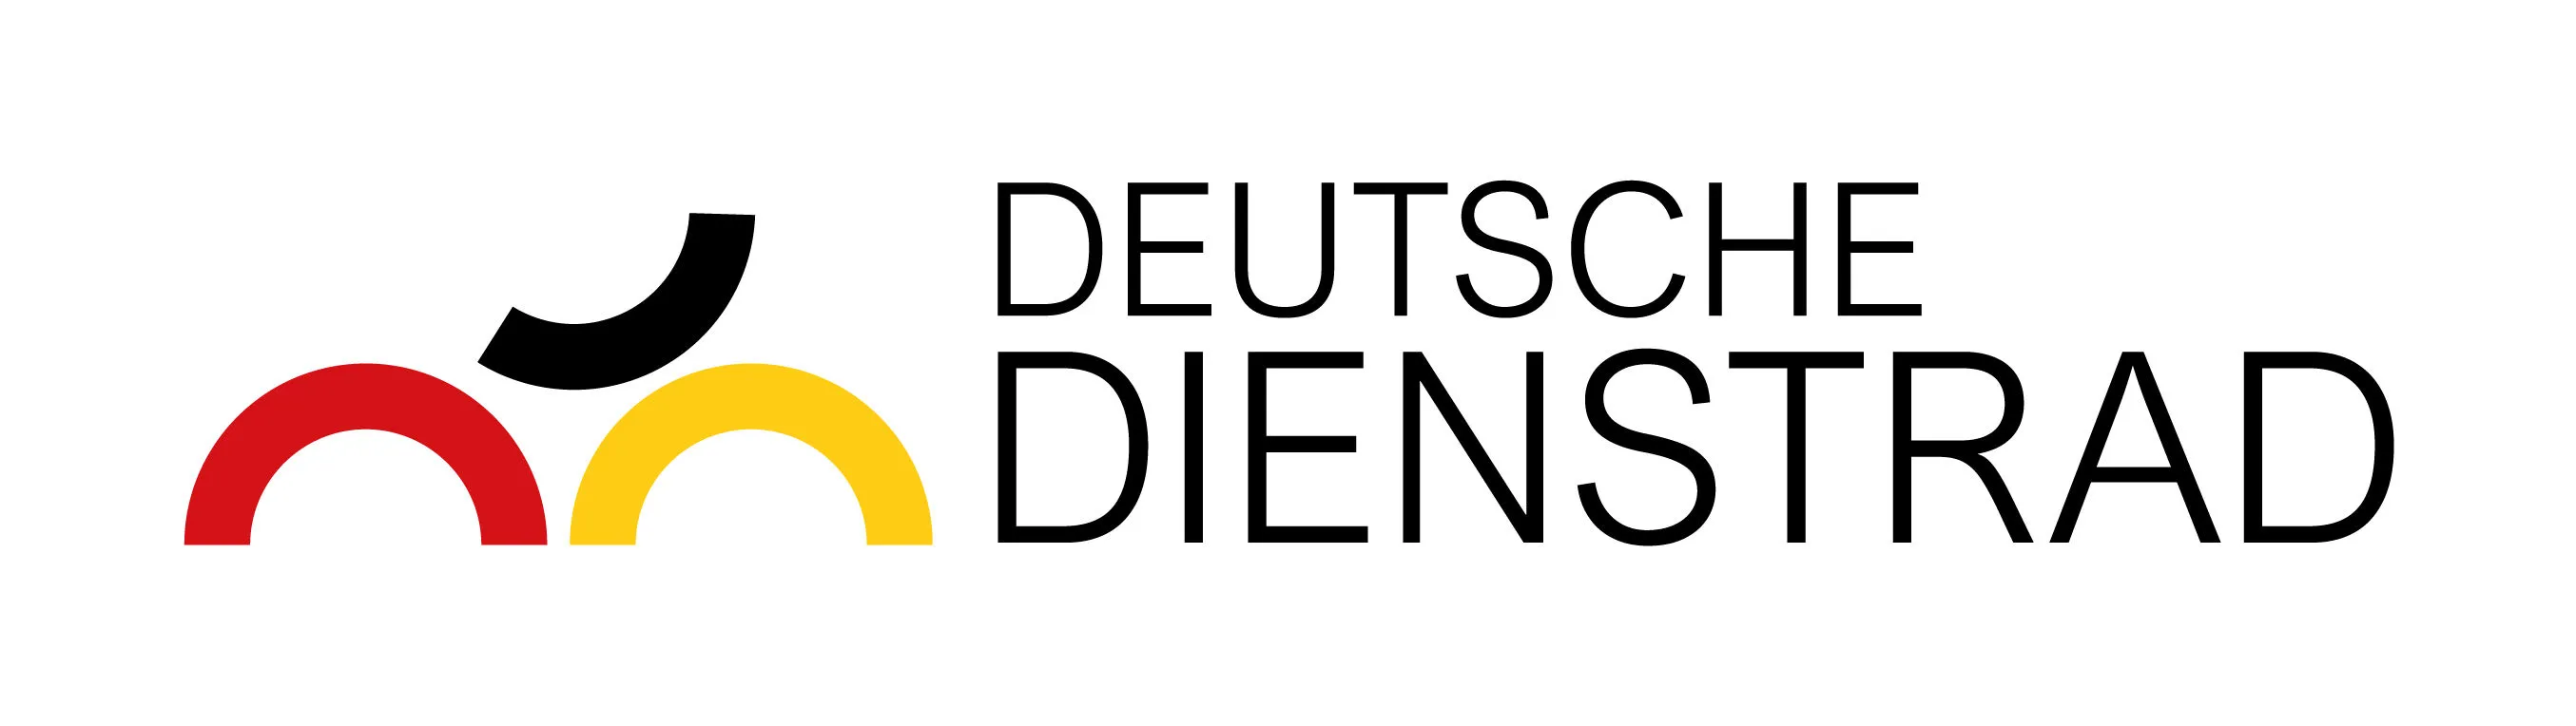 dd-logo-farbig